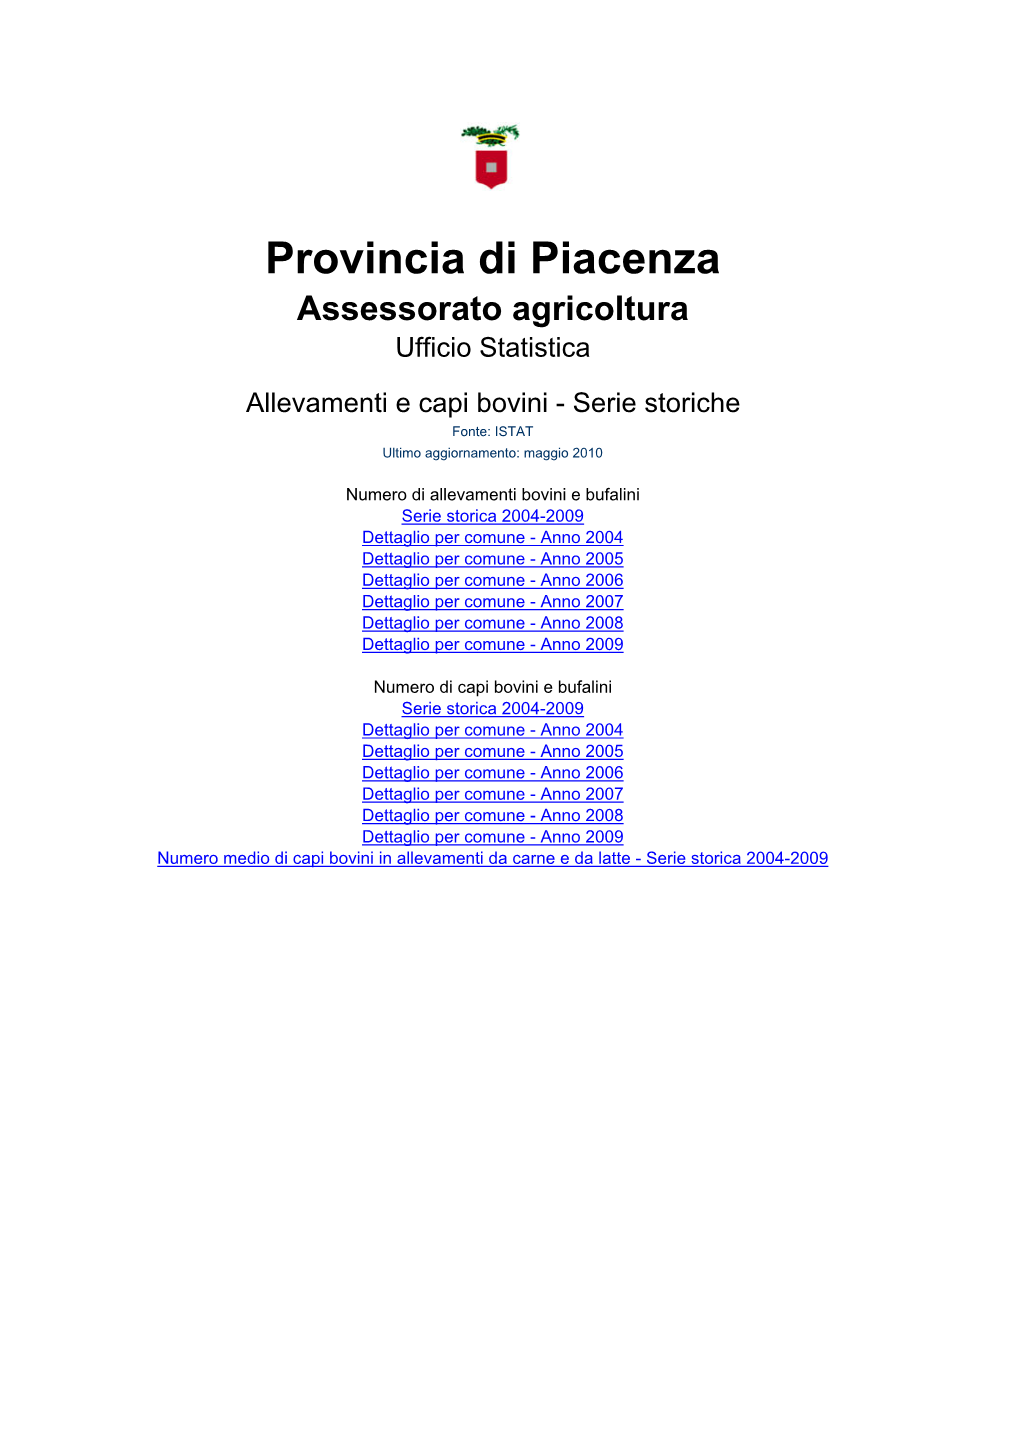 Provincia Di Piacenza Assessorato Agricoltura Ufficio Statistica